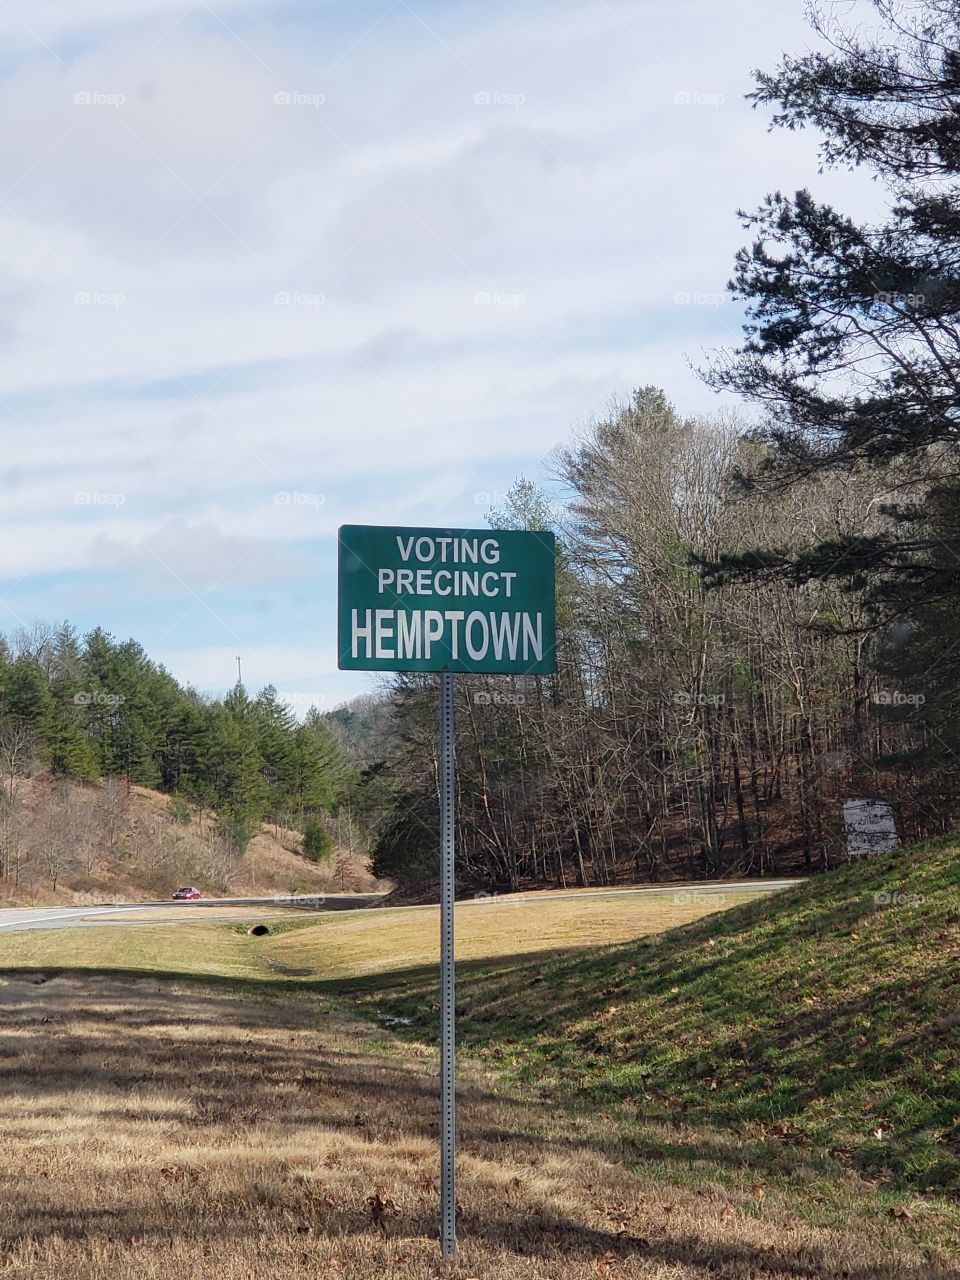 Hemptown. it's a real place